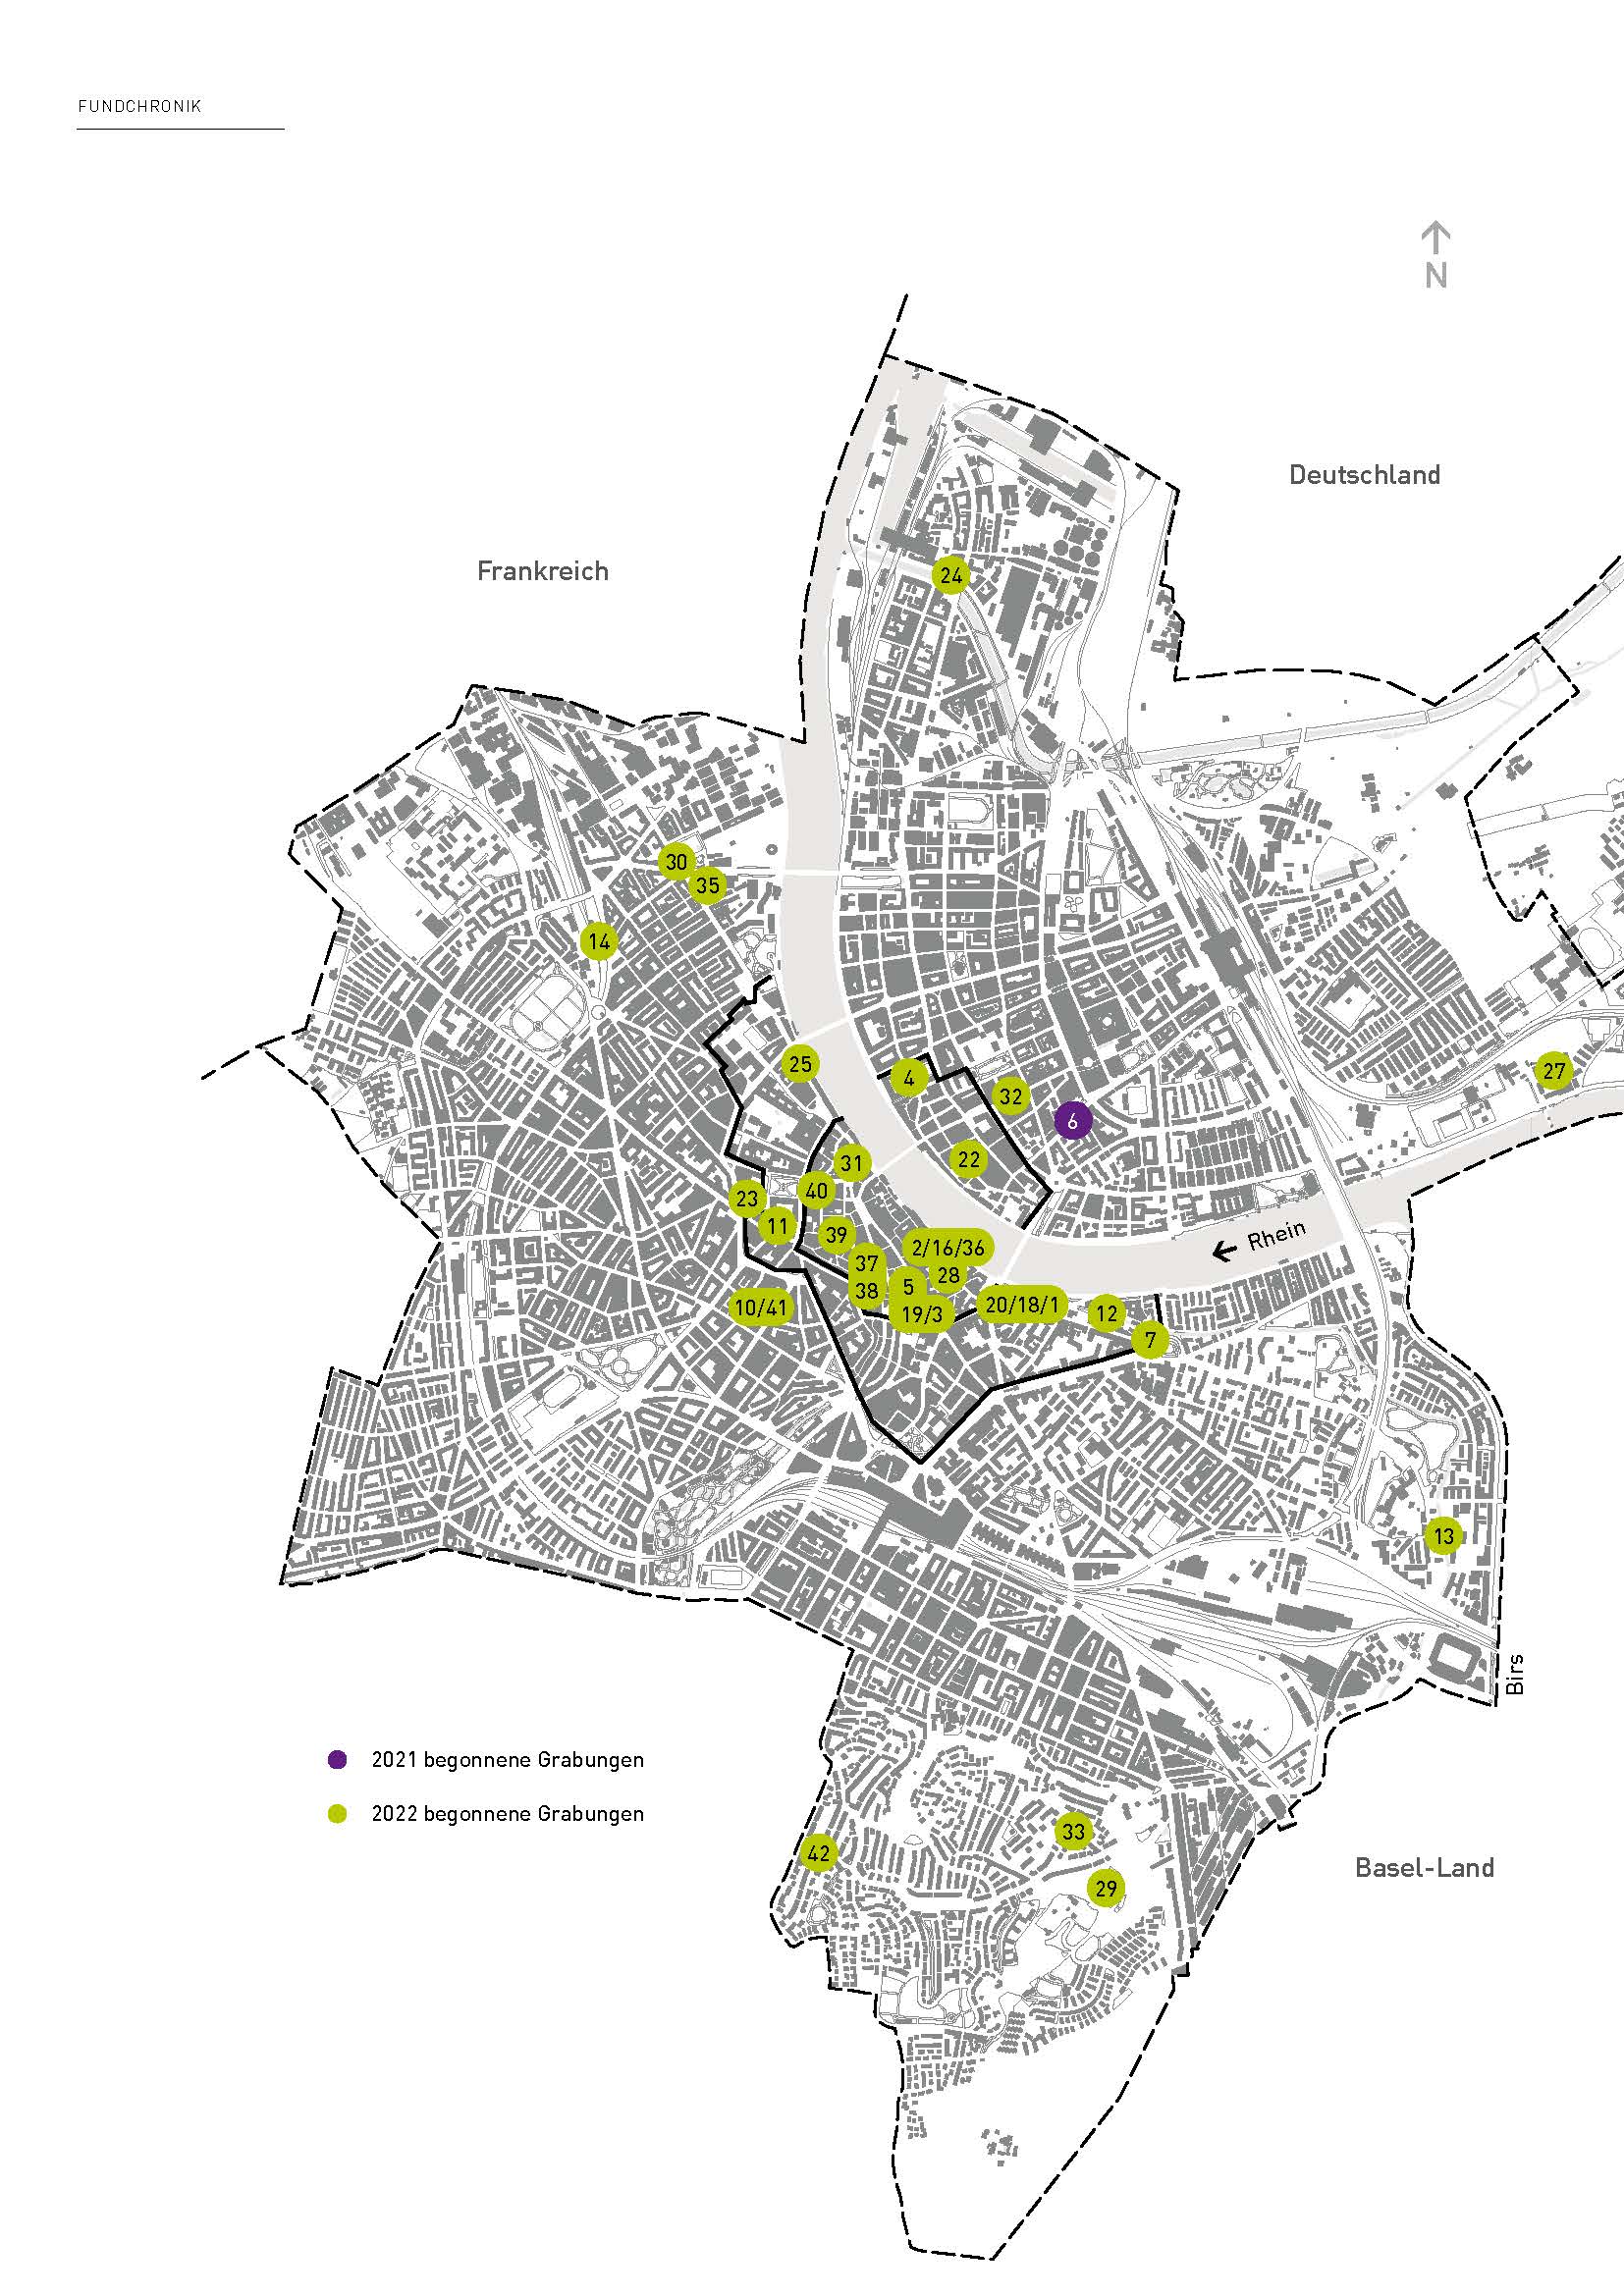 Die Fundstellen aus dem Jahr 2022 auf einer Karte des Kantons Basel-Stadt eingezeichnet